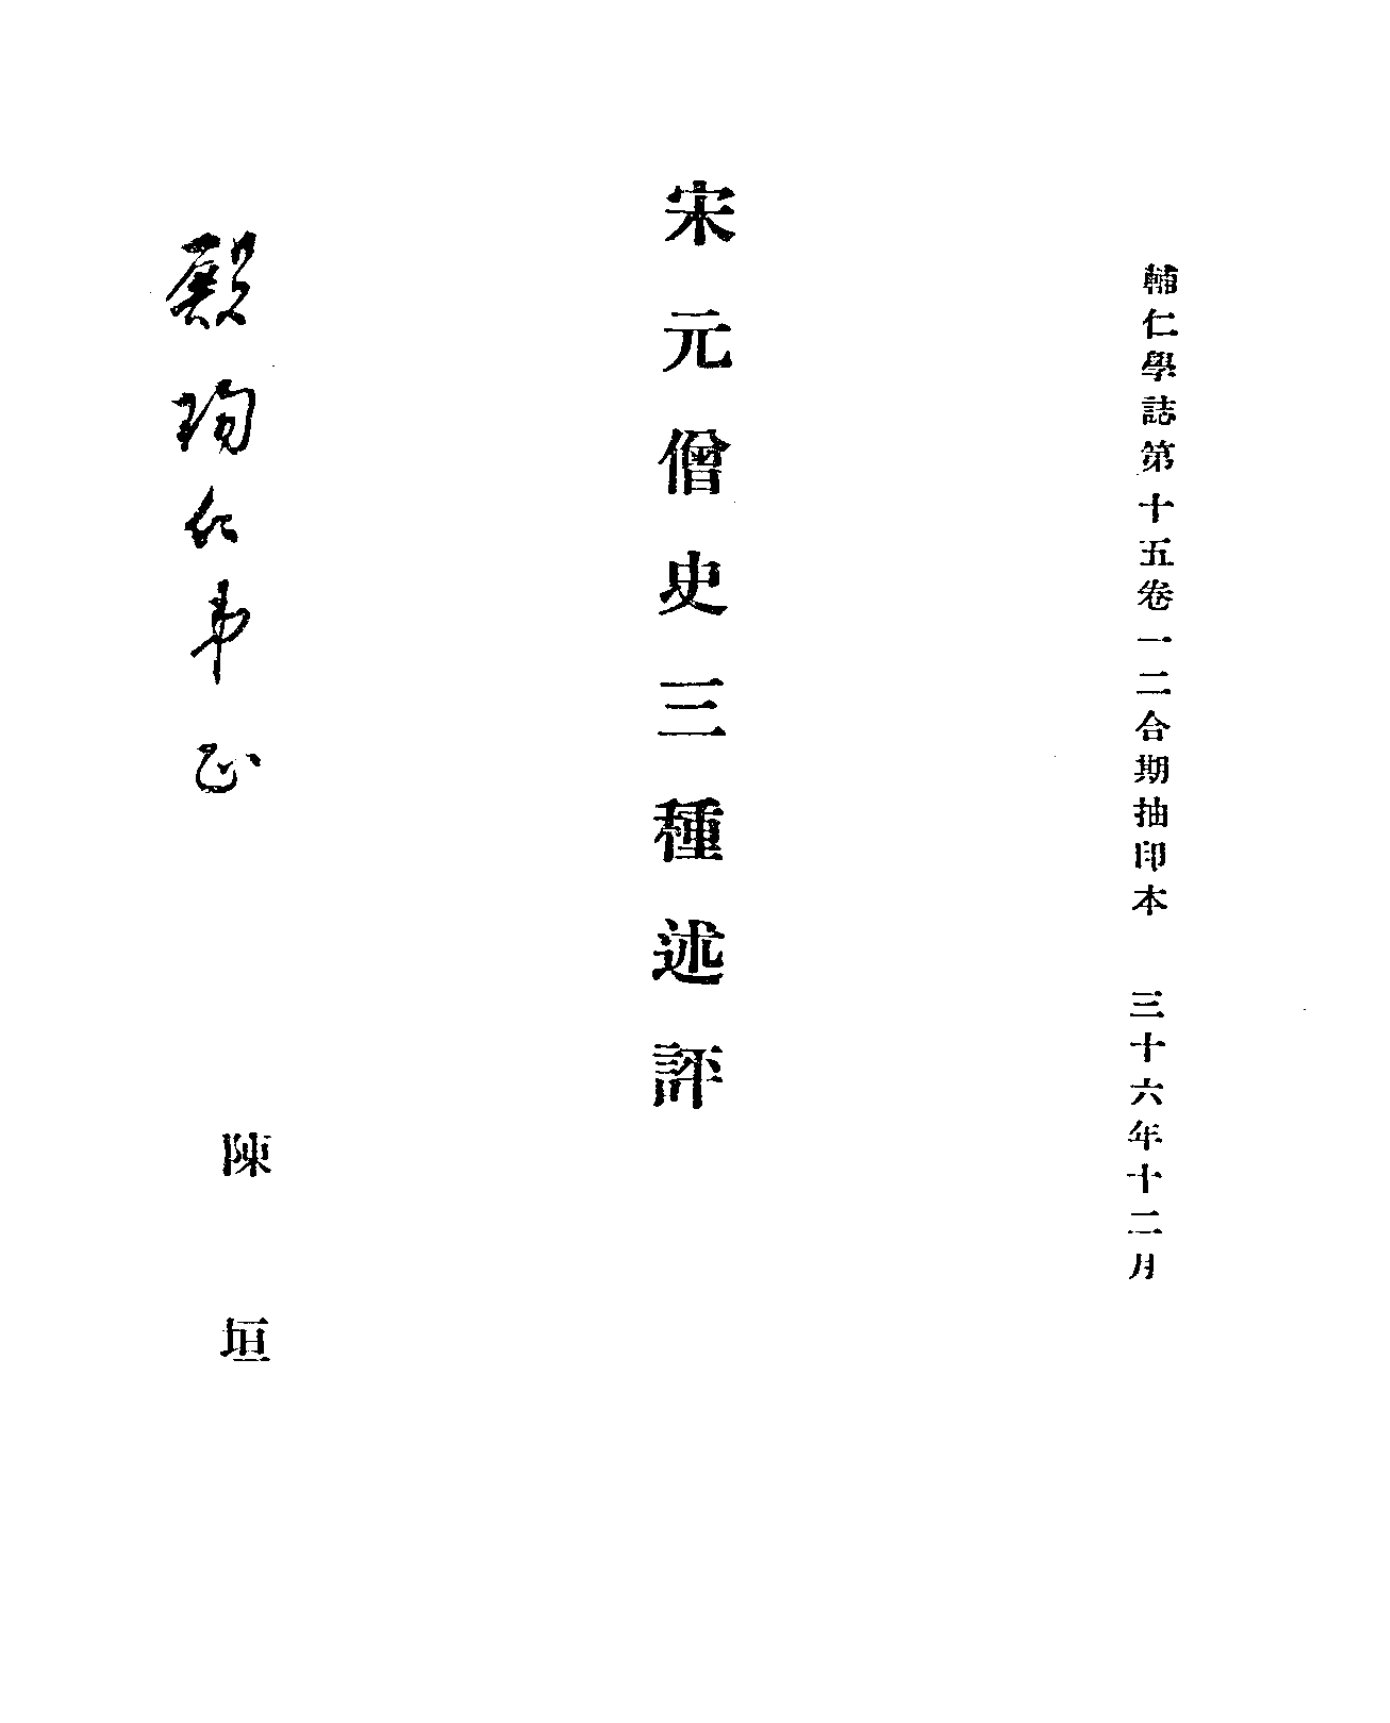 File:Song-Yuan sengshi sanzhong shuping 1937.png